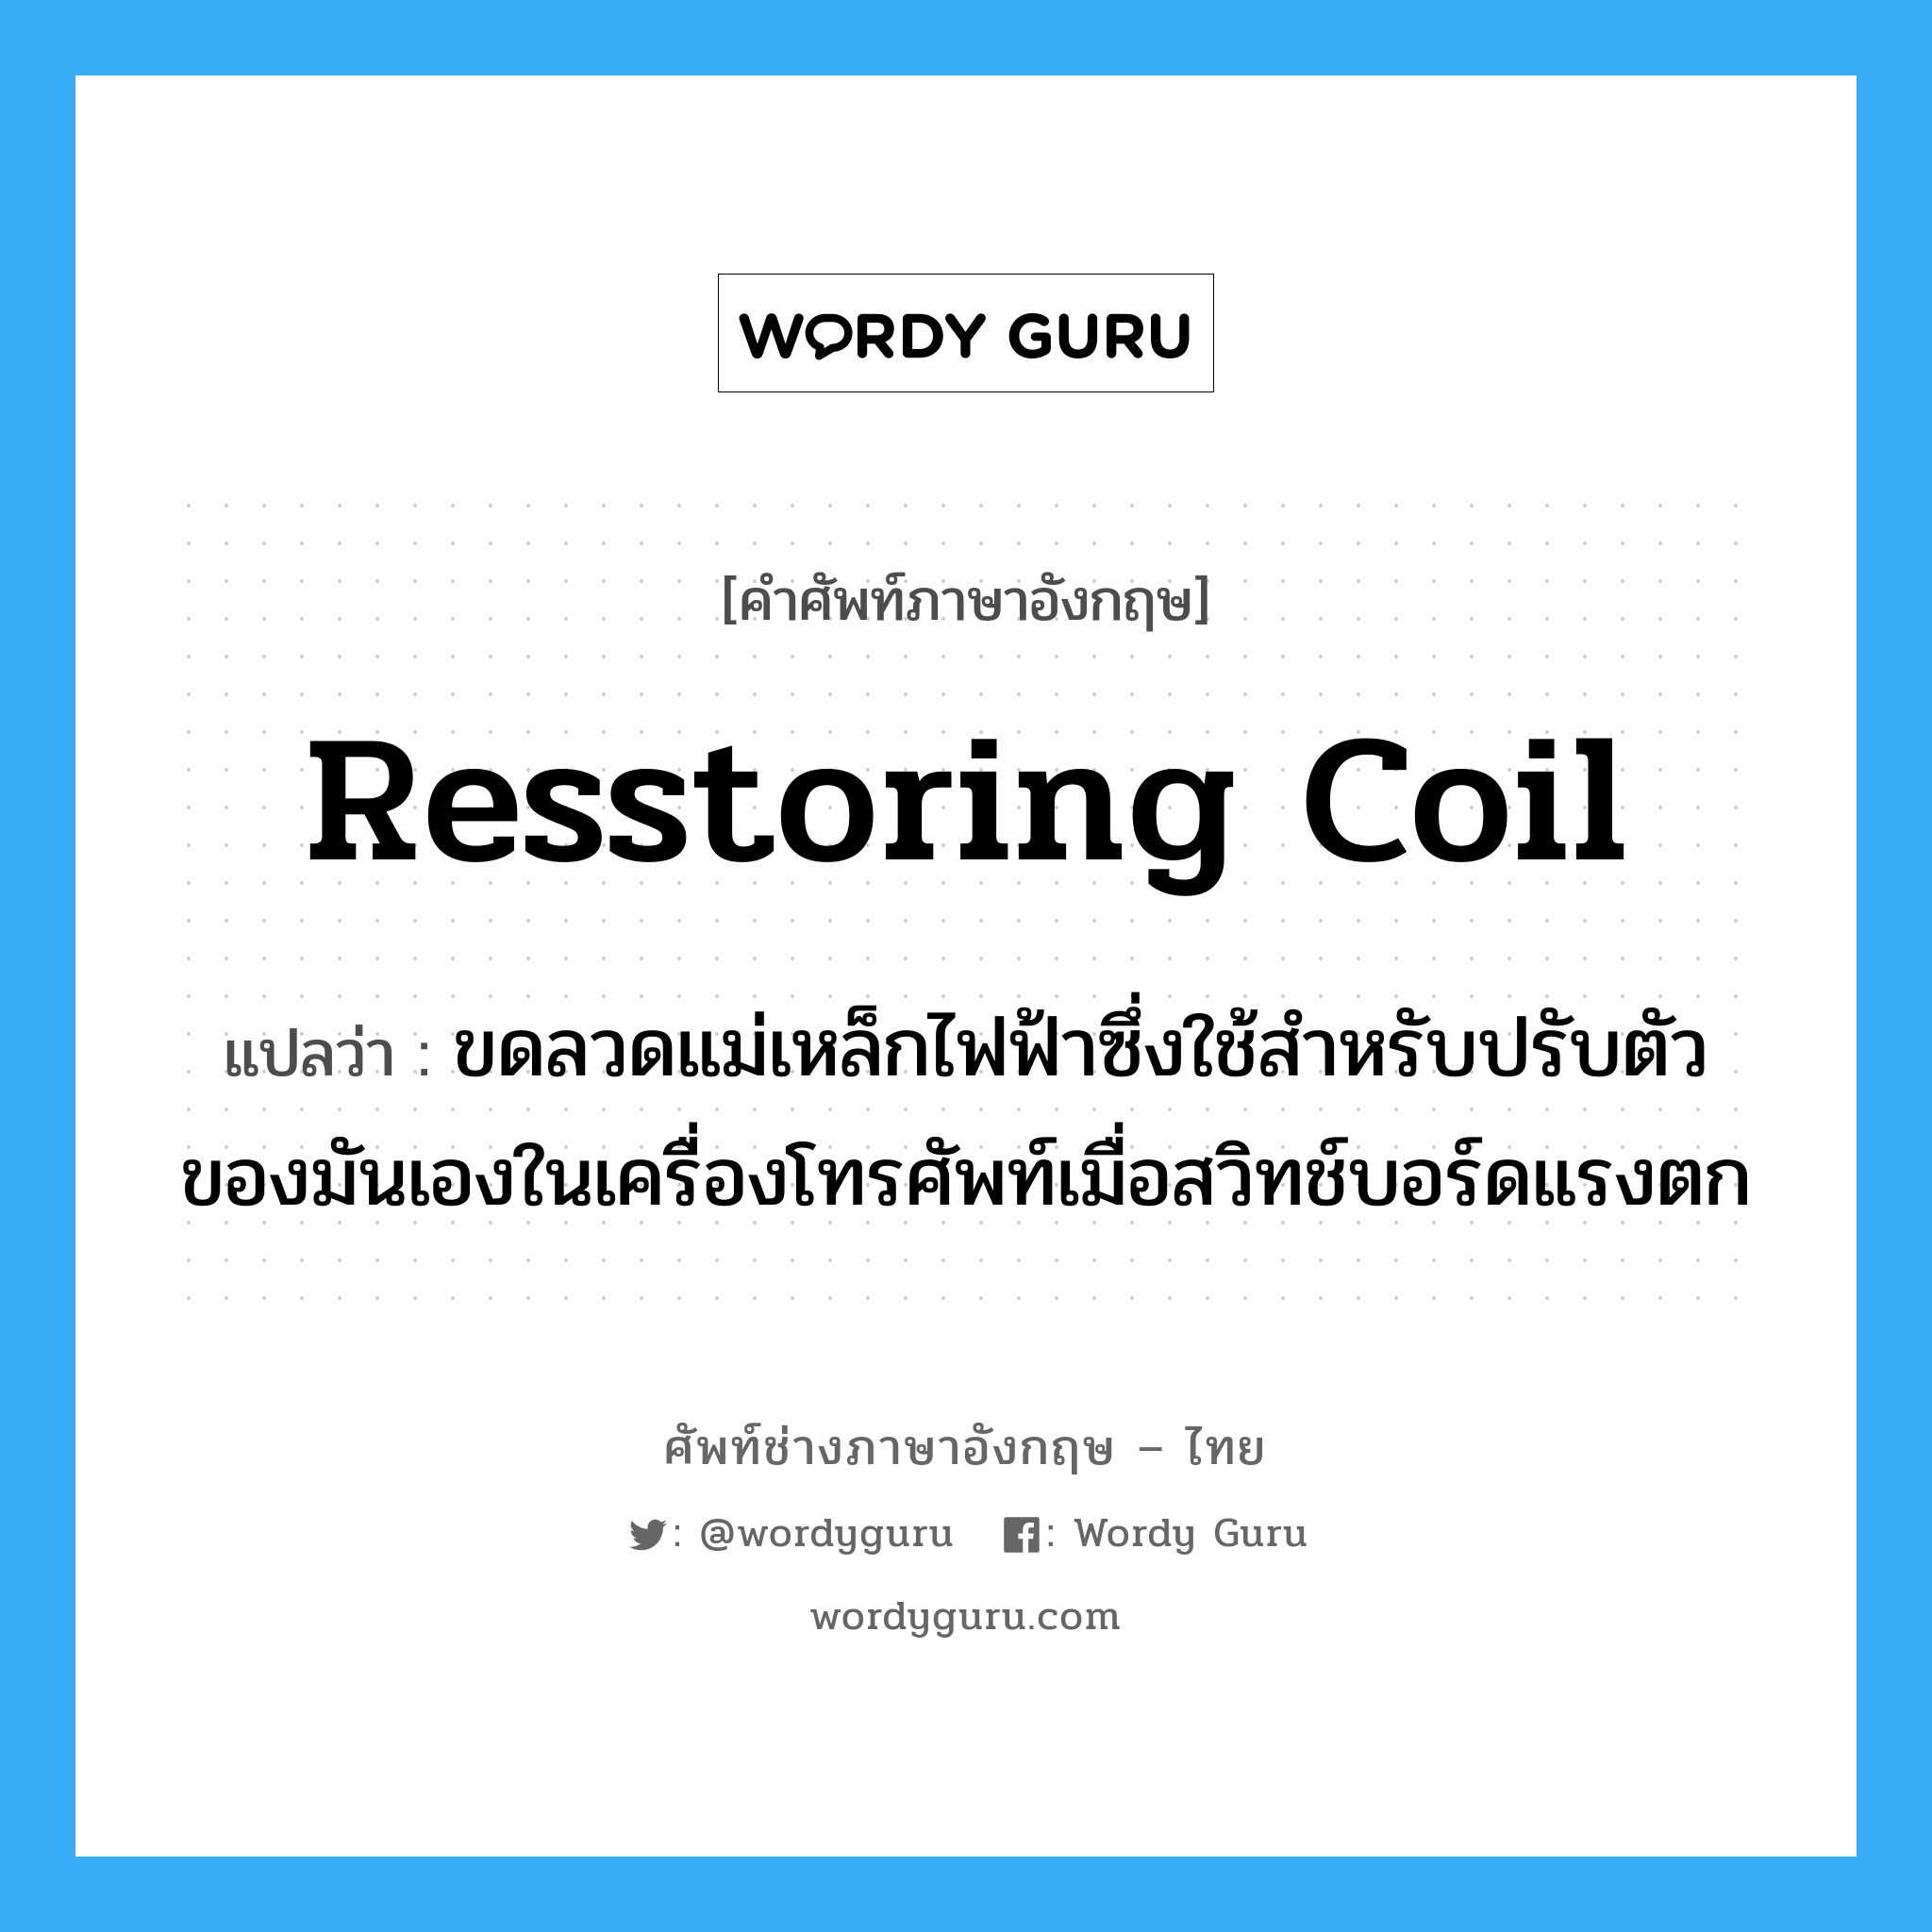 resstoring coil แปลว่า?, คำศัพท์ช่างภาษาอังกฤษ - ไทย resstoring coil คำศัพท์ภาษาอังกฤษ resstoring coil แปลว่า ขดลวดแม่เหล็กไฟฟ้าซึ่งใช้สำหรับปรับตัวของมันเองในเครื่องโทรศัพท์เมื่อสวิทช์บอร์ดแรงตก